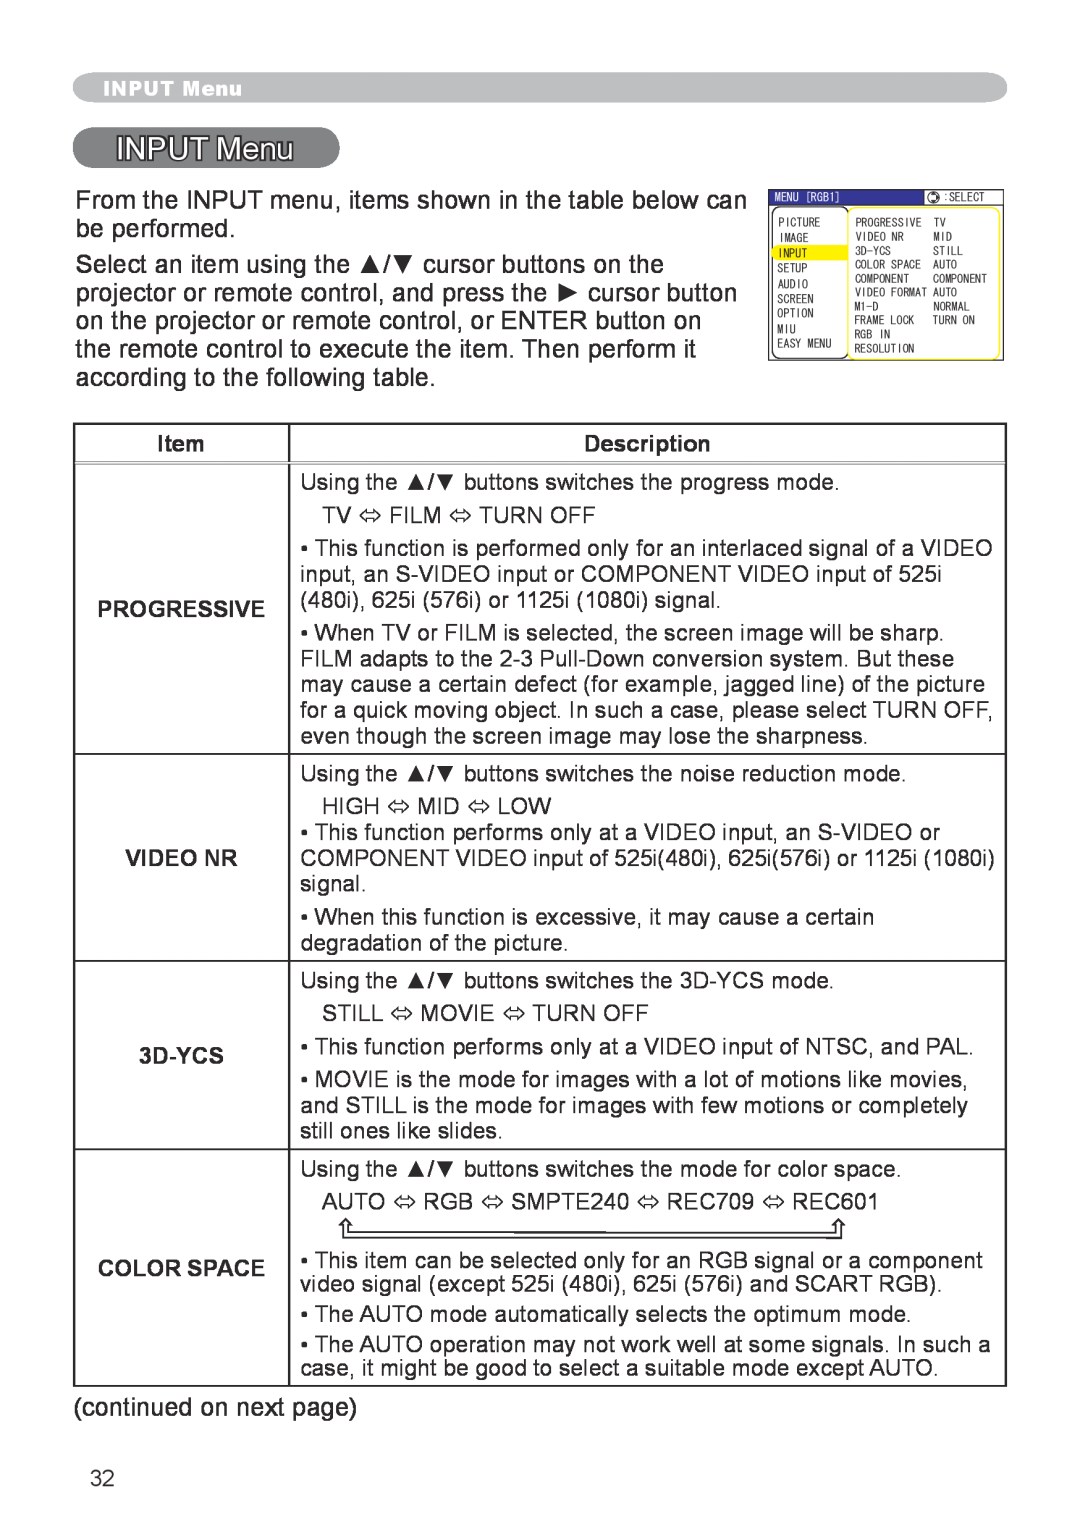 Hitachi CP-X608 user manual INPUT Menu, Description, Progressive, 3D-YCS, Color Space 